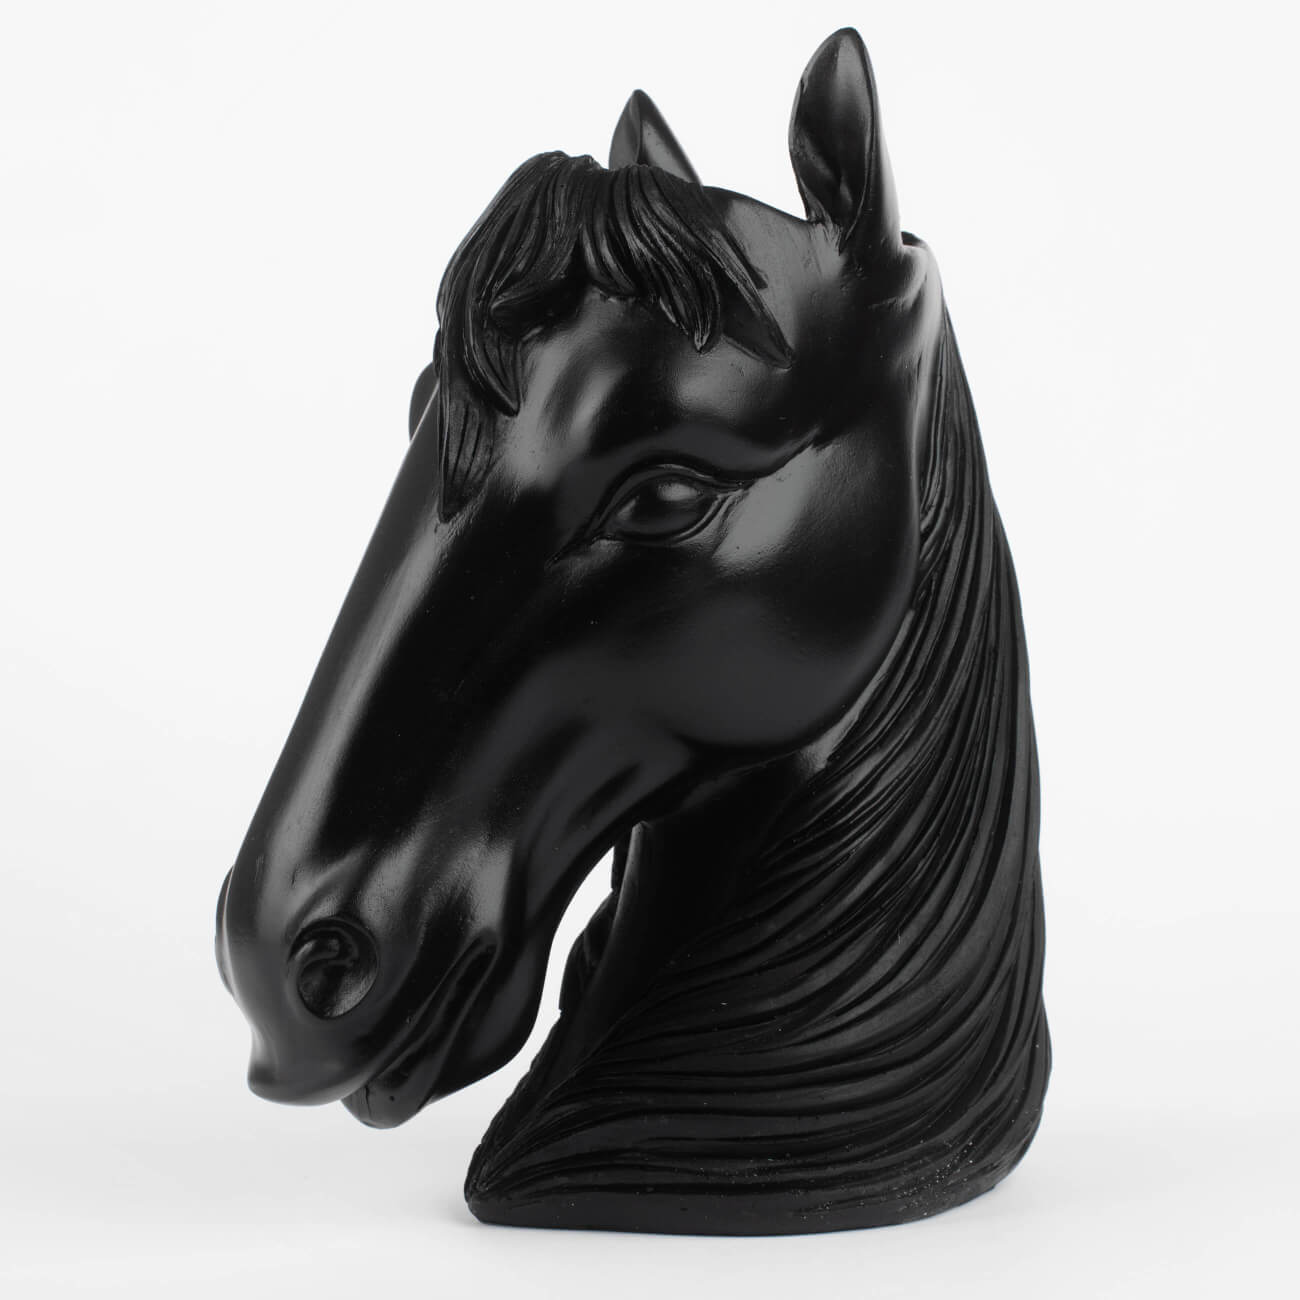 Ваза декоративная, 25 см, полирезин, черная, Голова лошади, Horse кукуруза декоративная земляничная